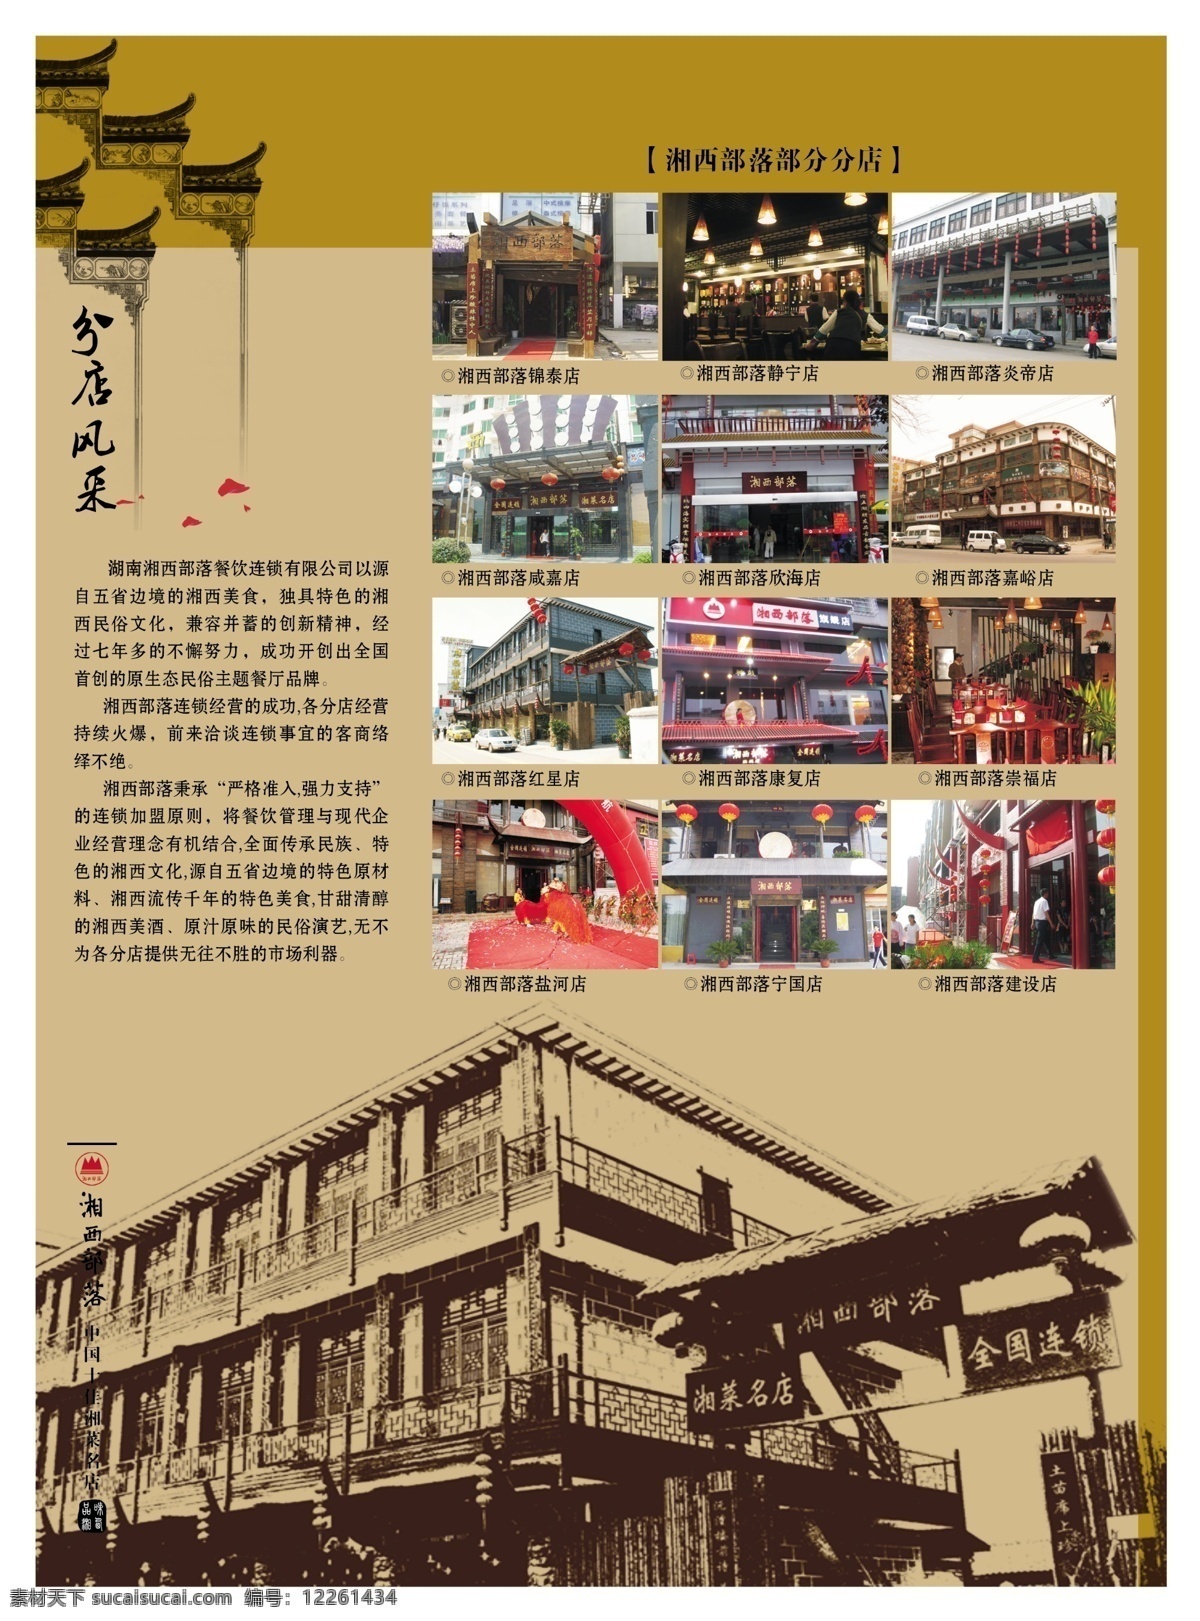 湘西部落 湘西部落简介 分店图片展示 湘西风采 古典房子 餐饮文化 分层 源文件